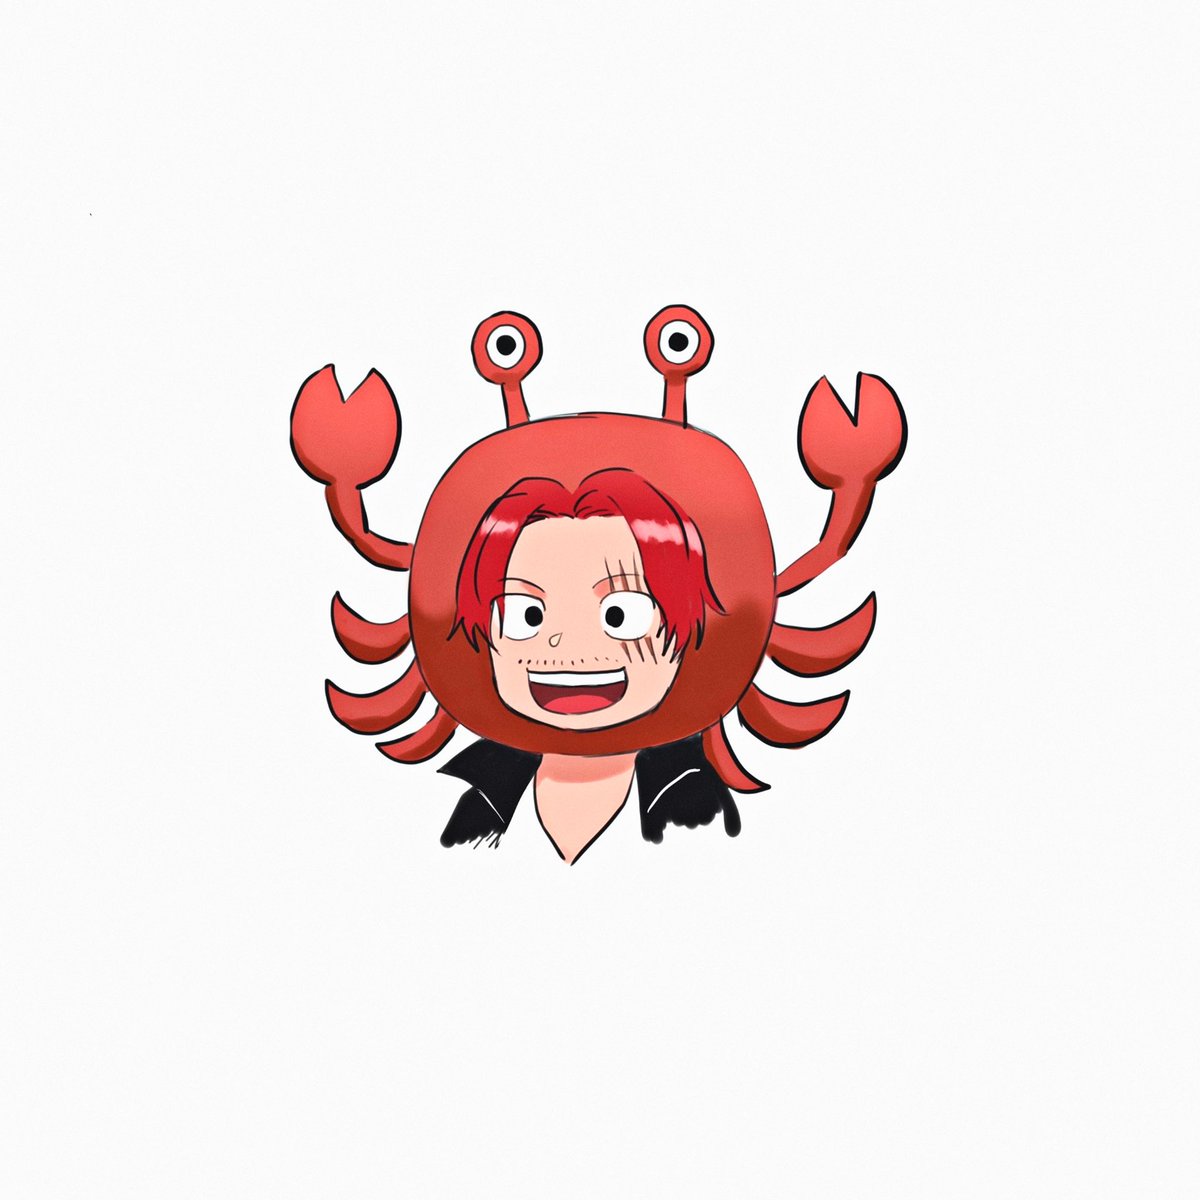 「らくがき
赤蟹のシャンクス

みんなパーティー読んでくれ… 」|蓮花(ﾚﾝｶ)のイラスト